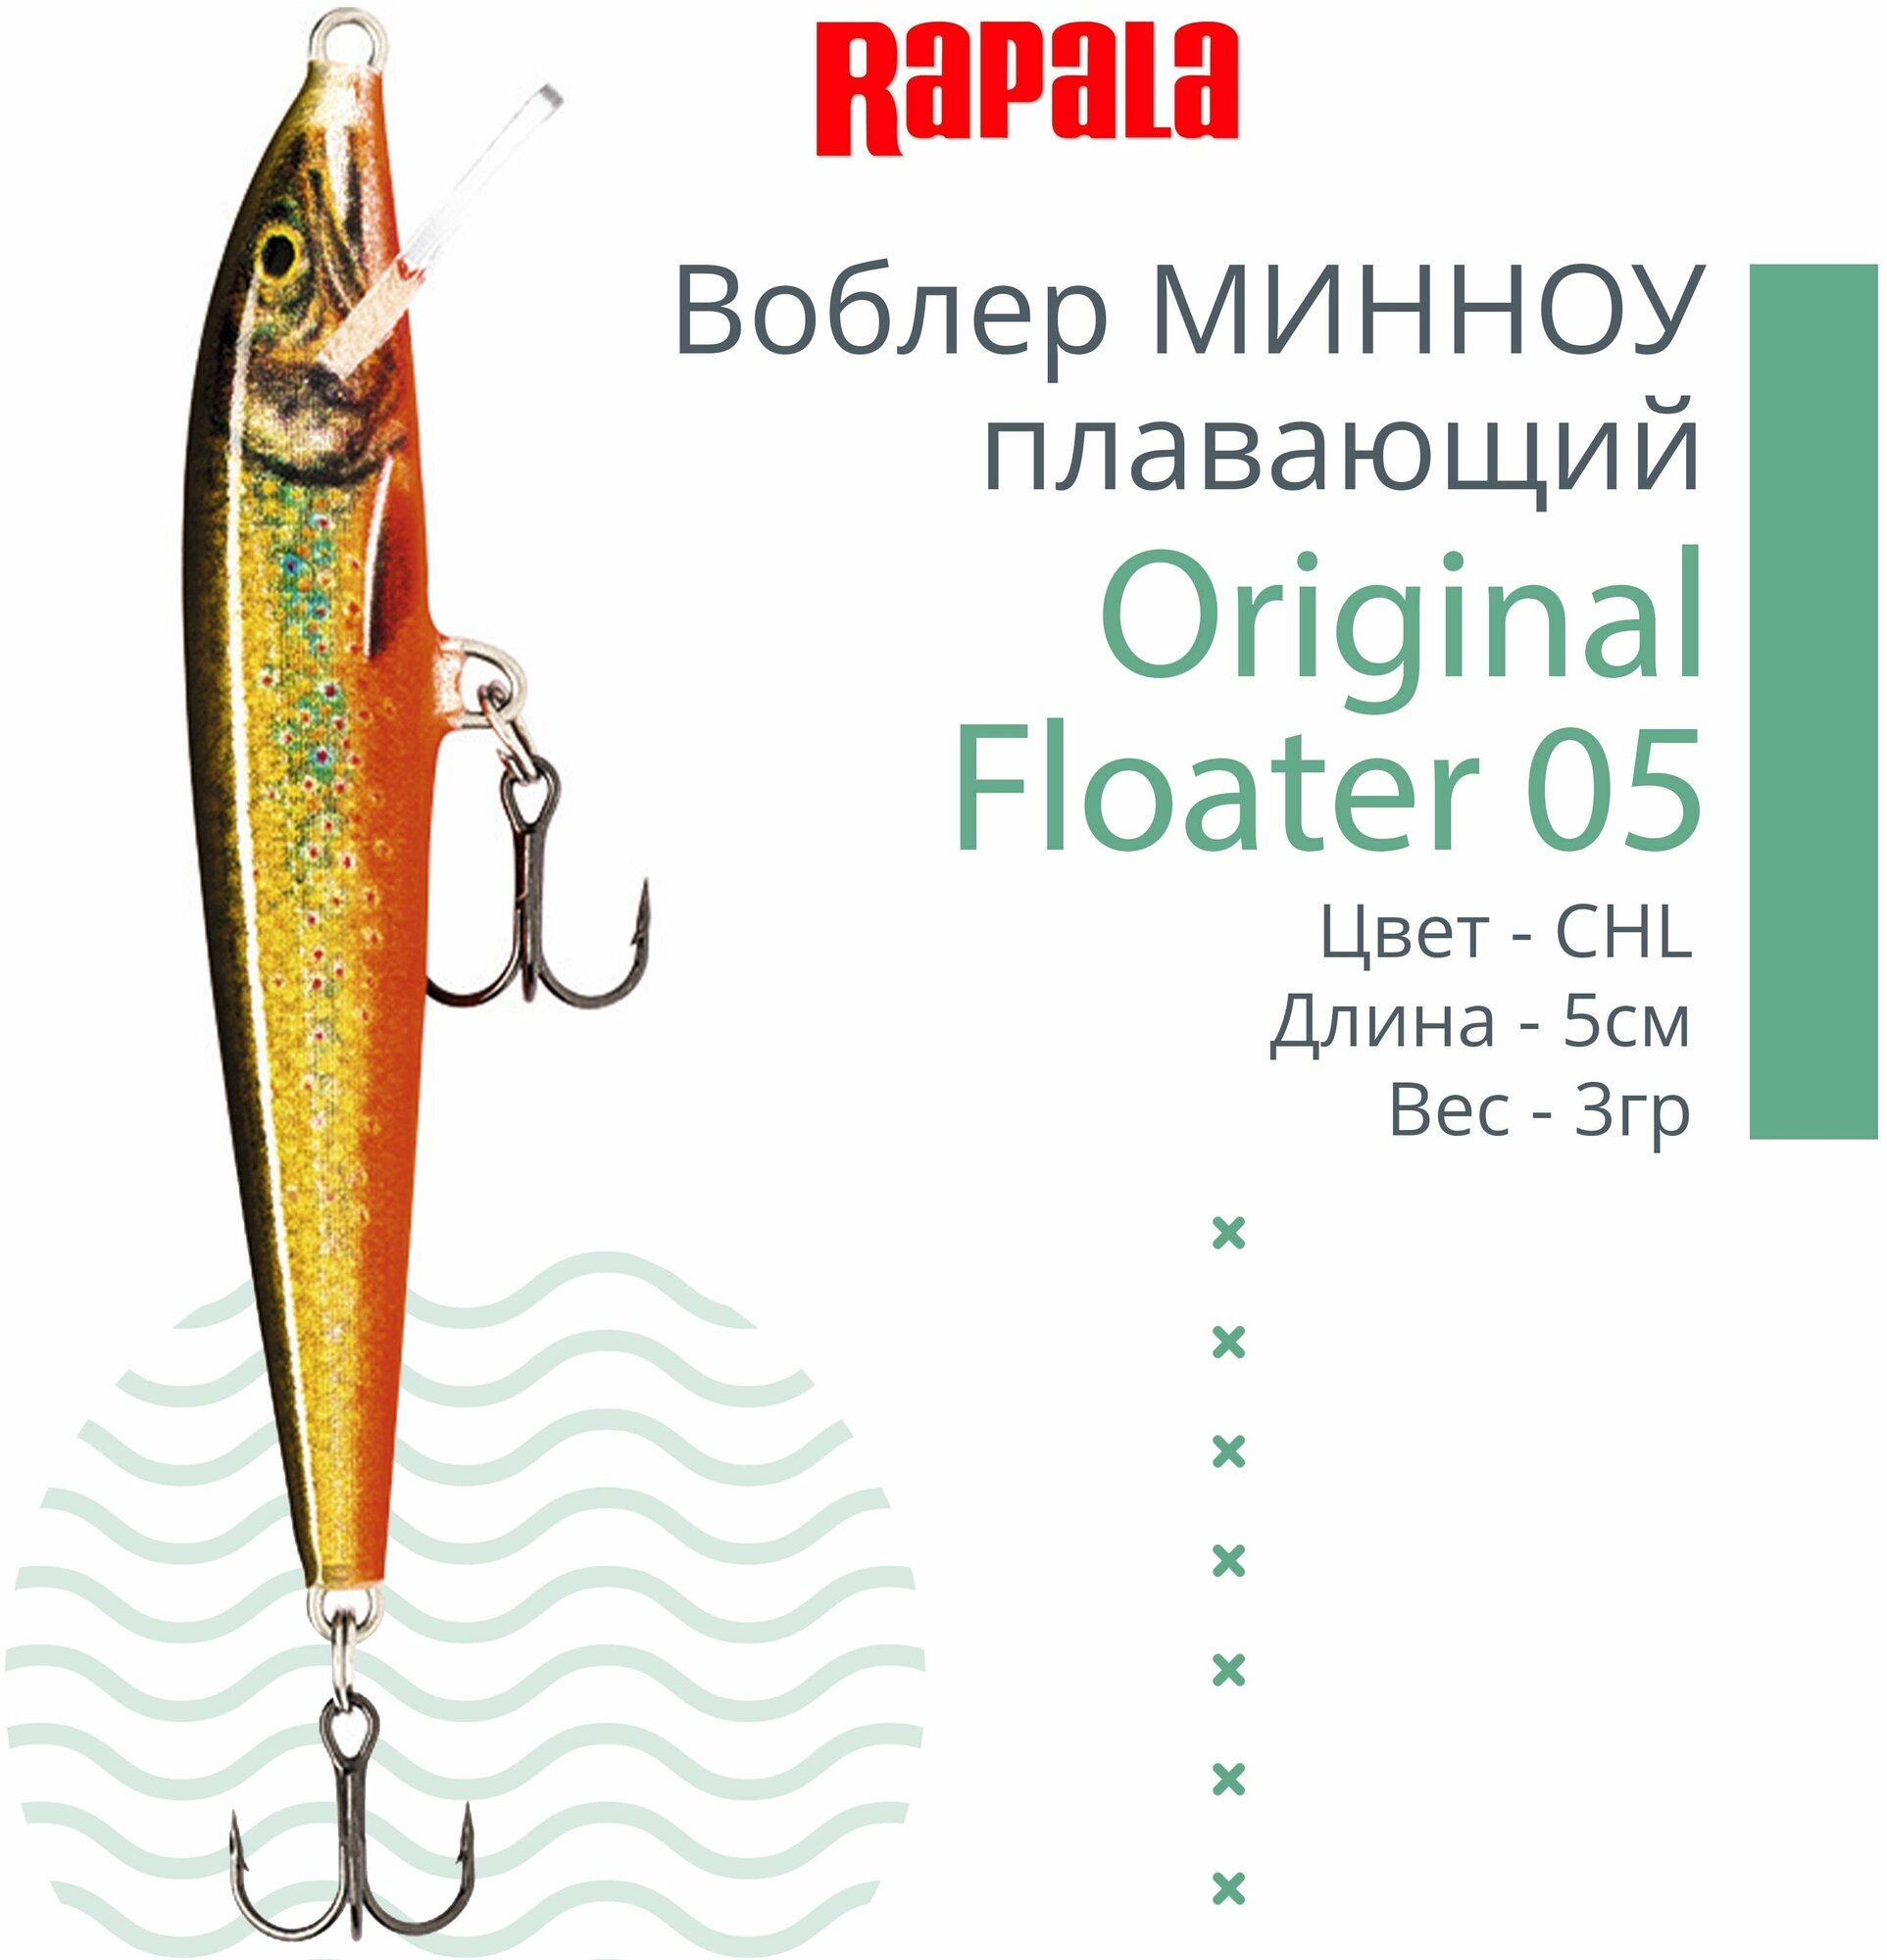 Воблер для рыбалки RAPALA Original Floater 05, 5см, 3гр, цвет CHL, плавающий